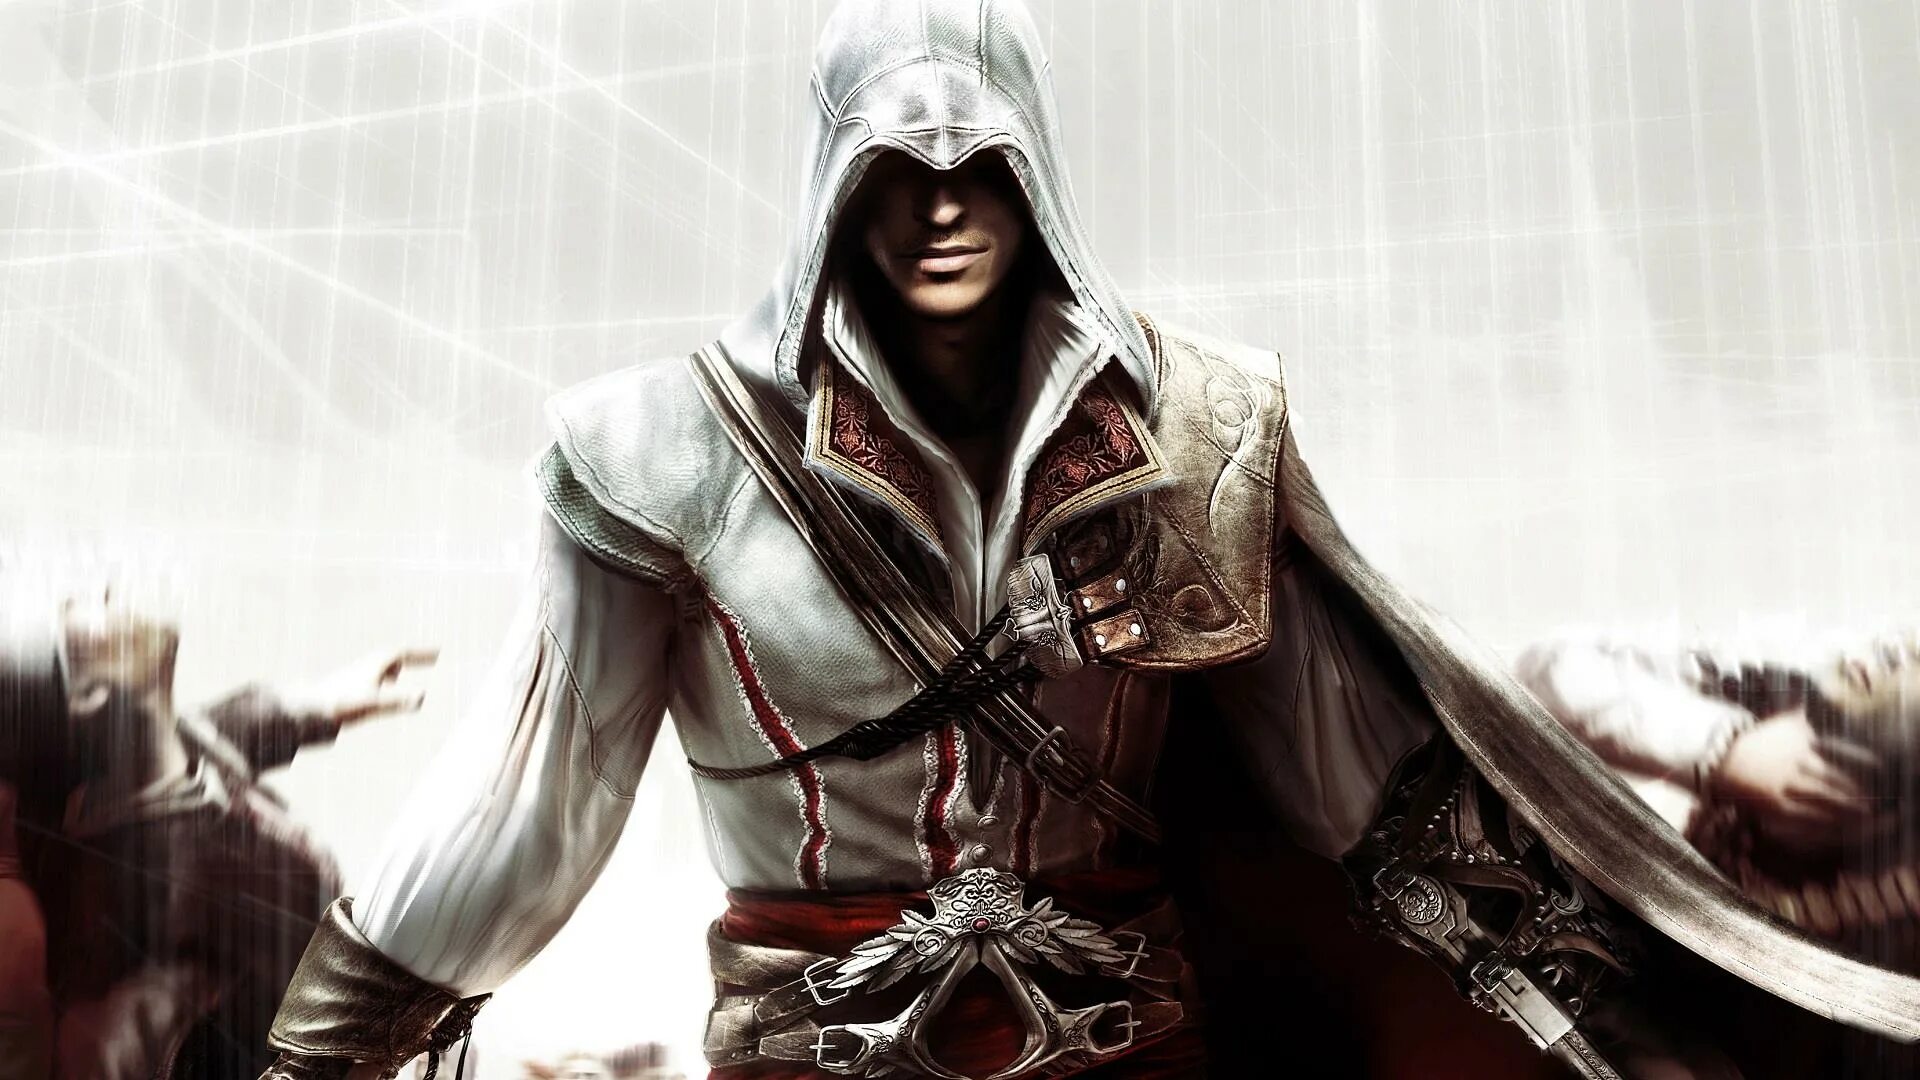 Ассасин крид купить стим. Ассасин Крид 2. Ассасин Крид 2 Эцио Аудиторе. Assassin s Creed 2 Ezio Auditore. Assassin's Creed 2 обои 1920x1080.